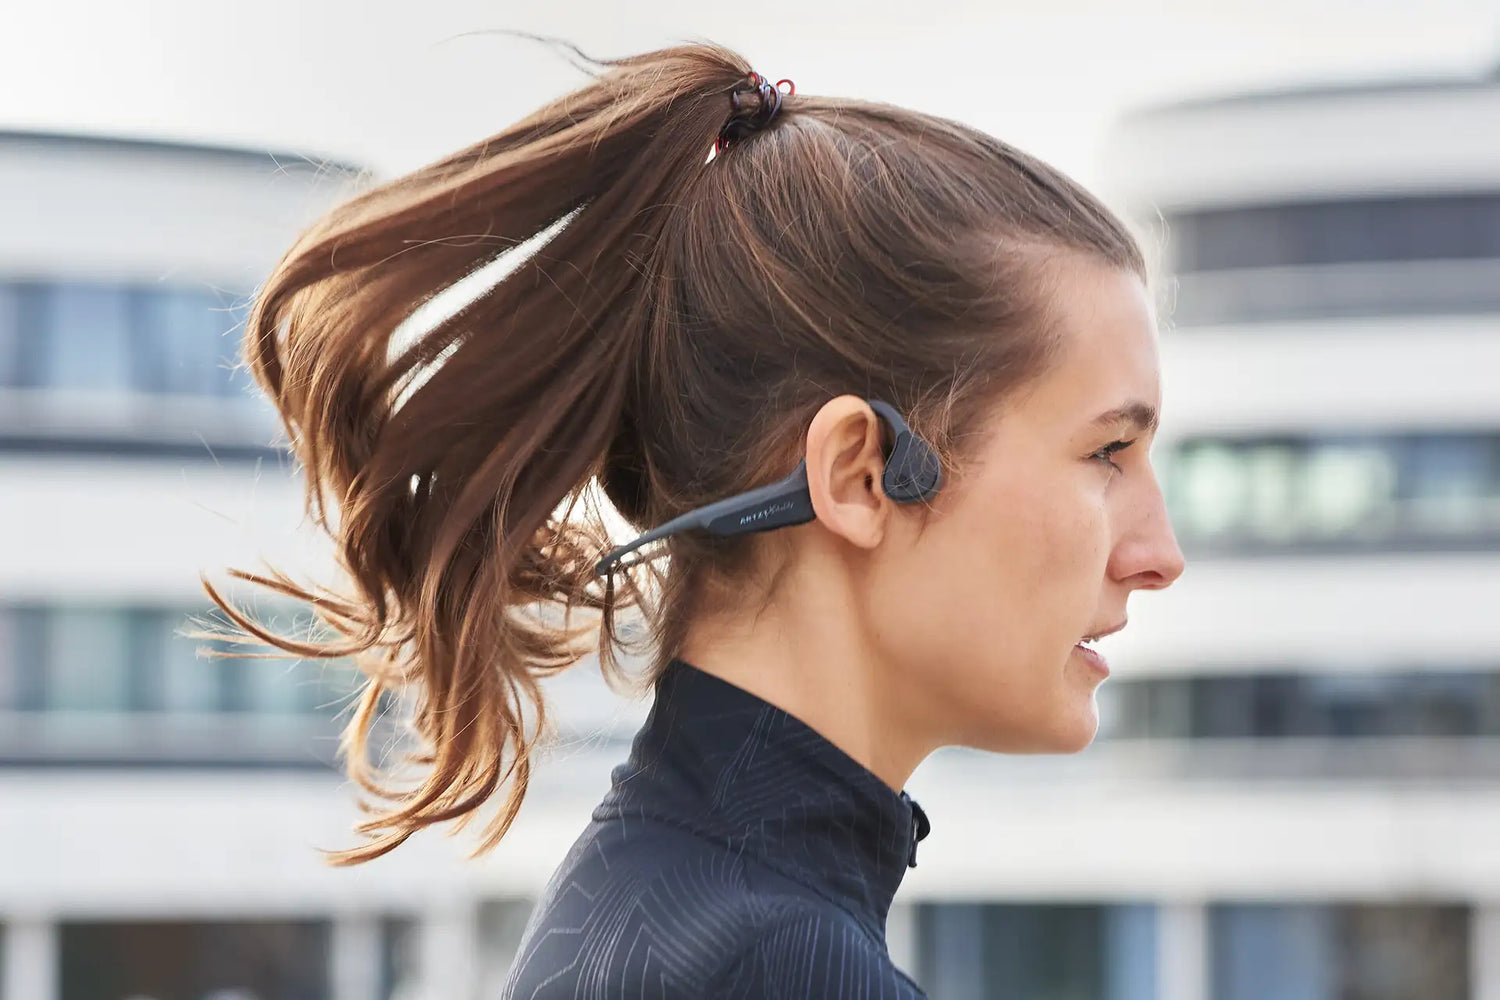 Kopf einer Frau im Profil, die den ARTZT neuro Soundvibe Knochenschall Kopfhörer trägt.